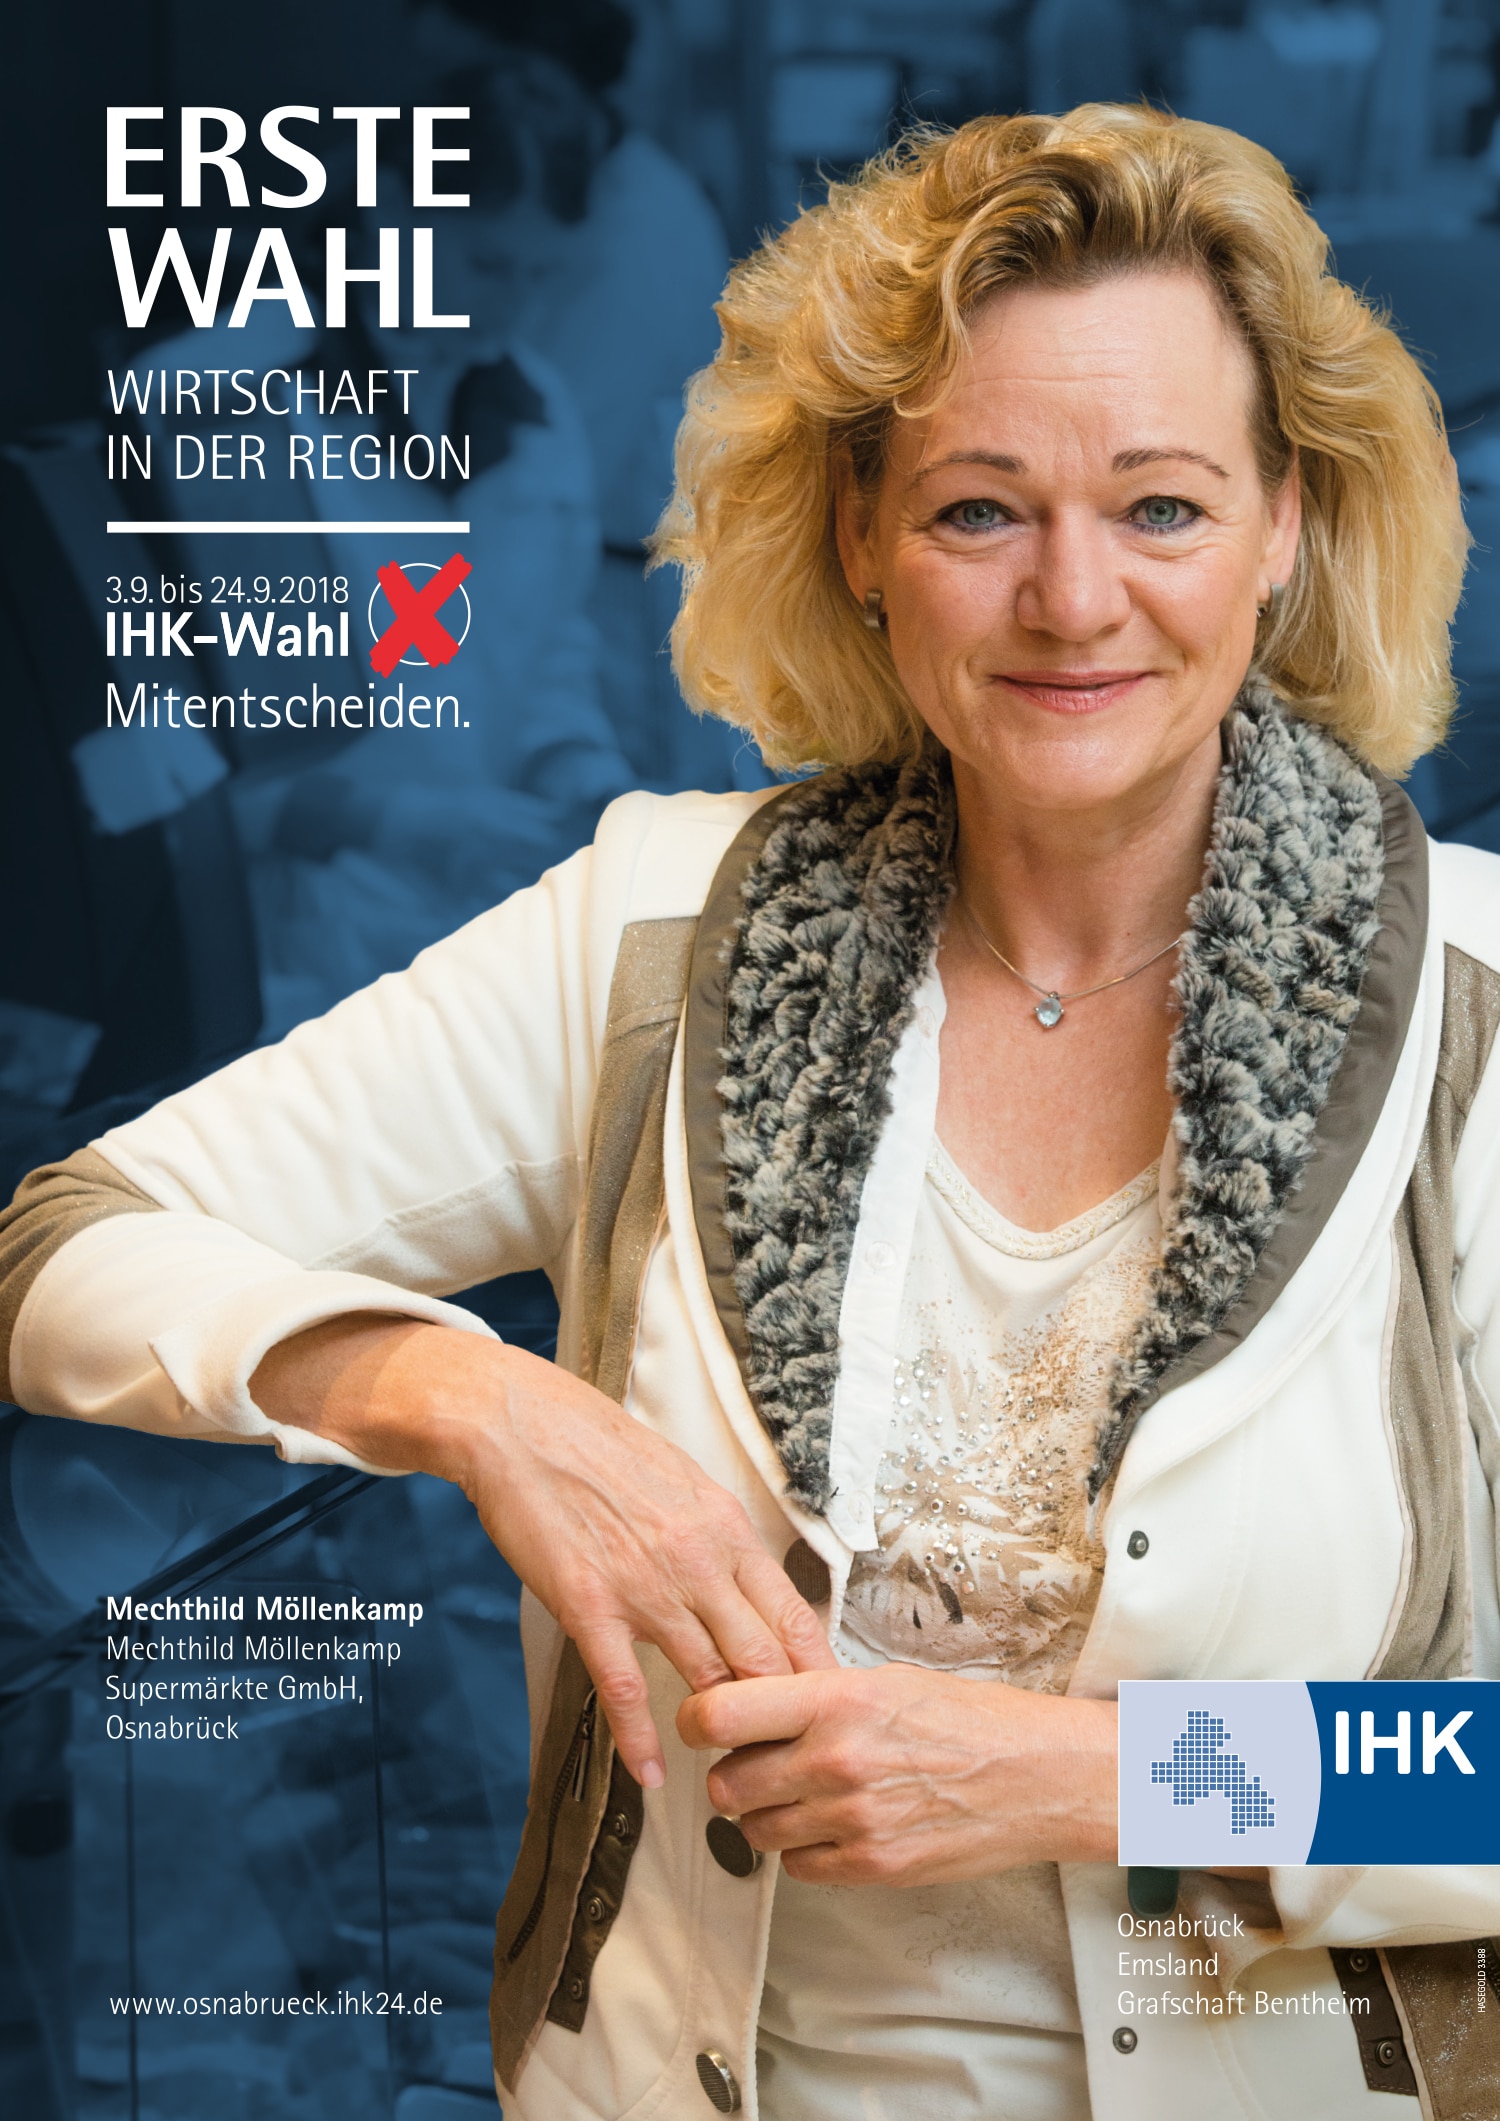 Möllenkamp Plakat für IHK Vollversammlungswahl in Osnabrück gestaltet von HASEGOLD, der Osnabrücker WordPress- und Grafik-Agentur